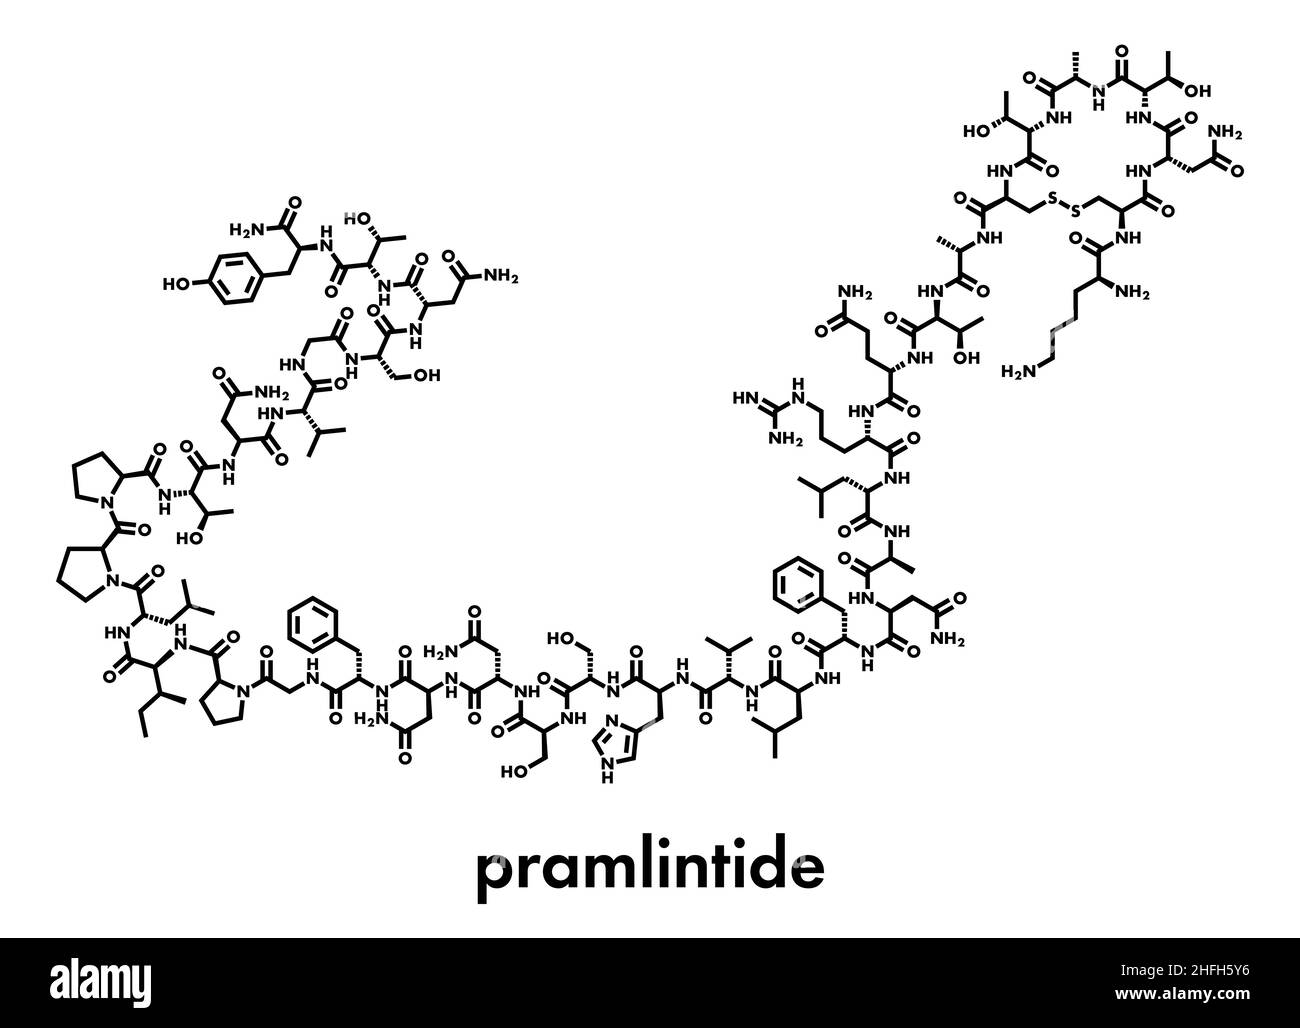 Diabète Pramlintide molécule pharmaceutique. Analogue de l'amyline ou islet amyloid polypeptide (IAPP). Formule topologique. Illustration de Vecteur